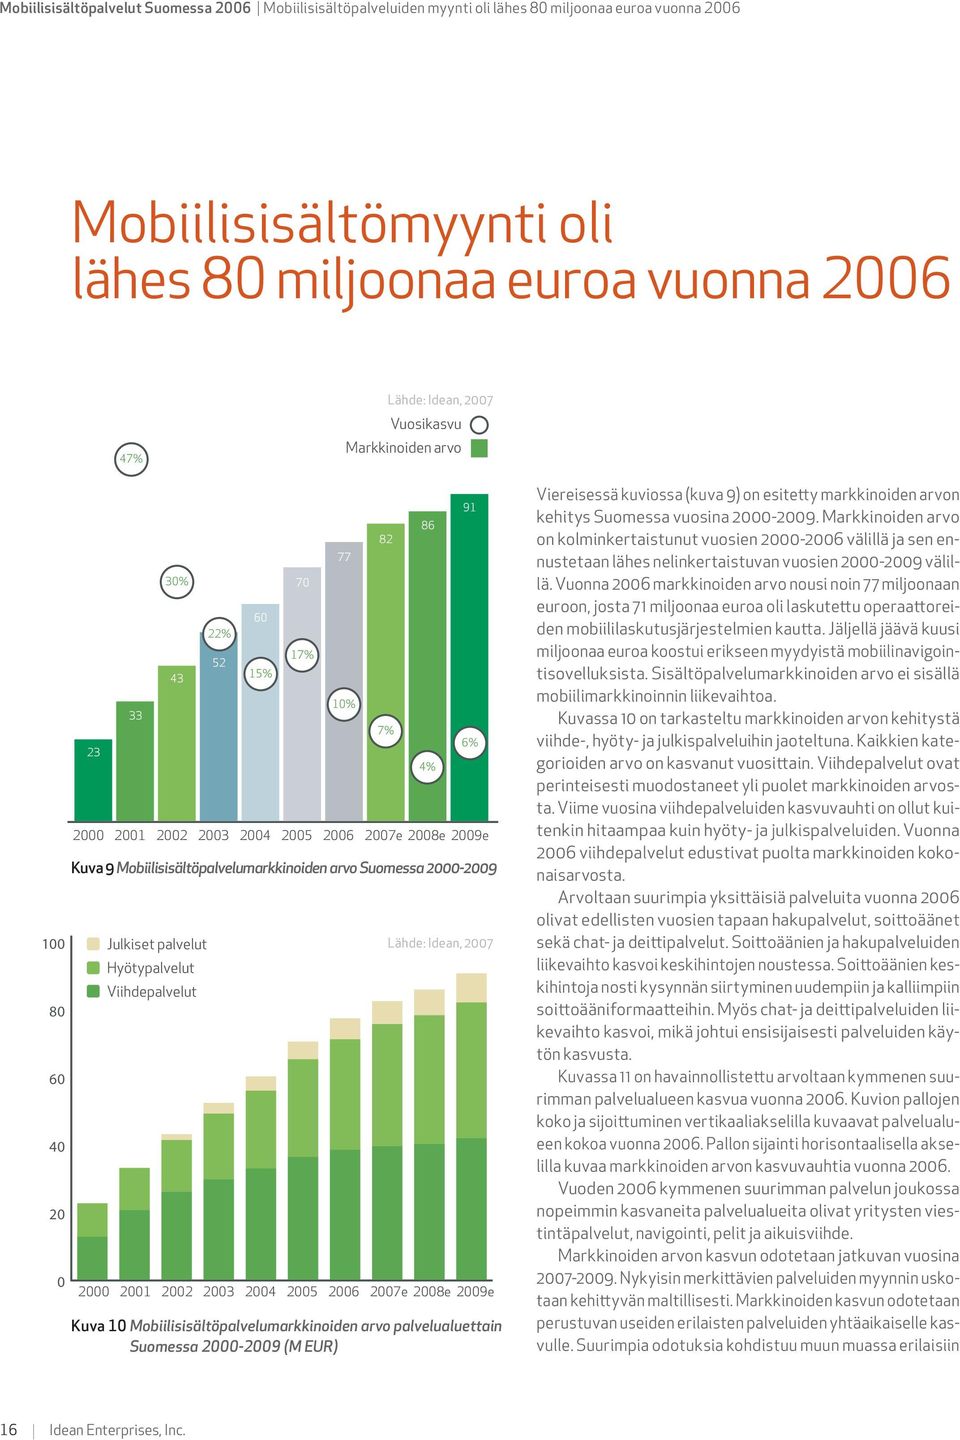 markkinoiden arvon kehitys Suomessa vuosina 2000-2009. Markkinoiden arvo on kolminkertaistunut vuosien 2000-2006 välillä ja sen ennustetaan lähes nelinkertaistuvan vuosien 2000-2009 välillä.